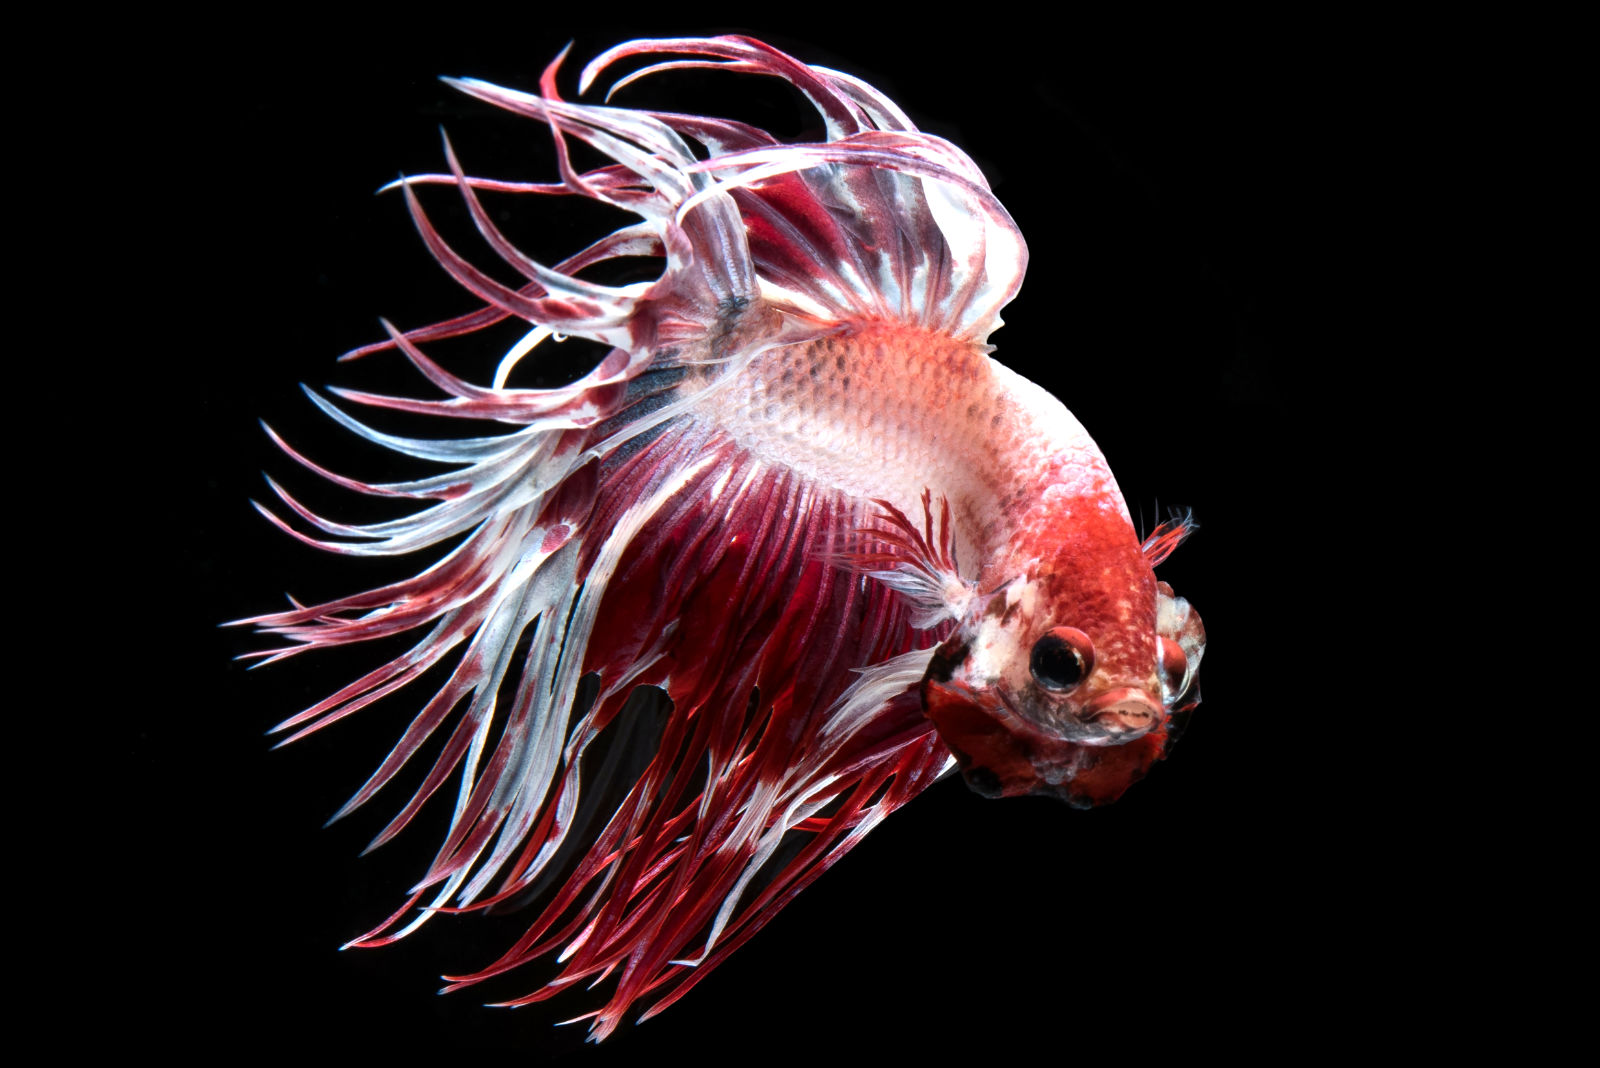 Pesce combattente (Betta splendens) - Rosso e bianco